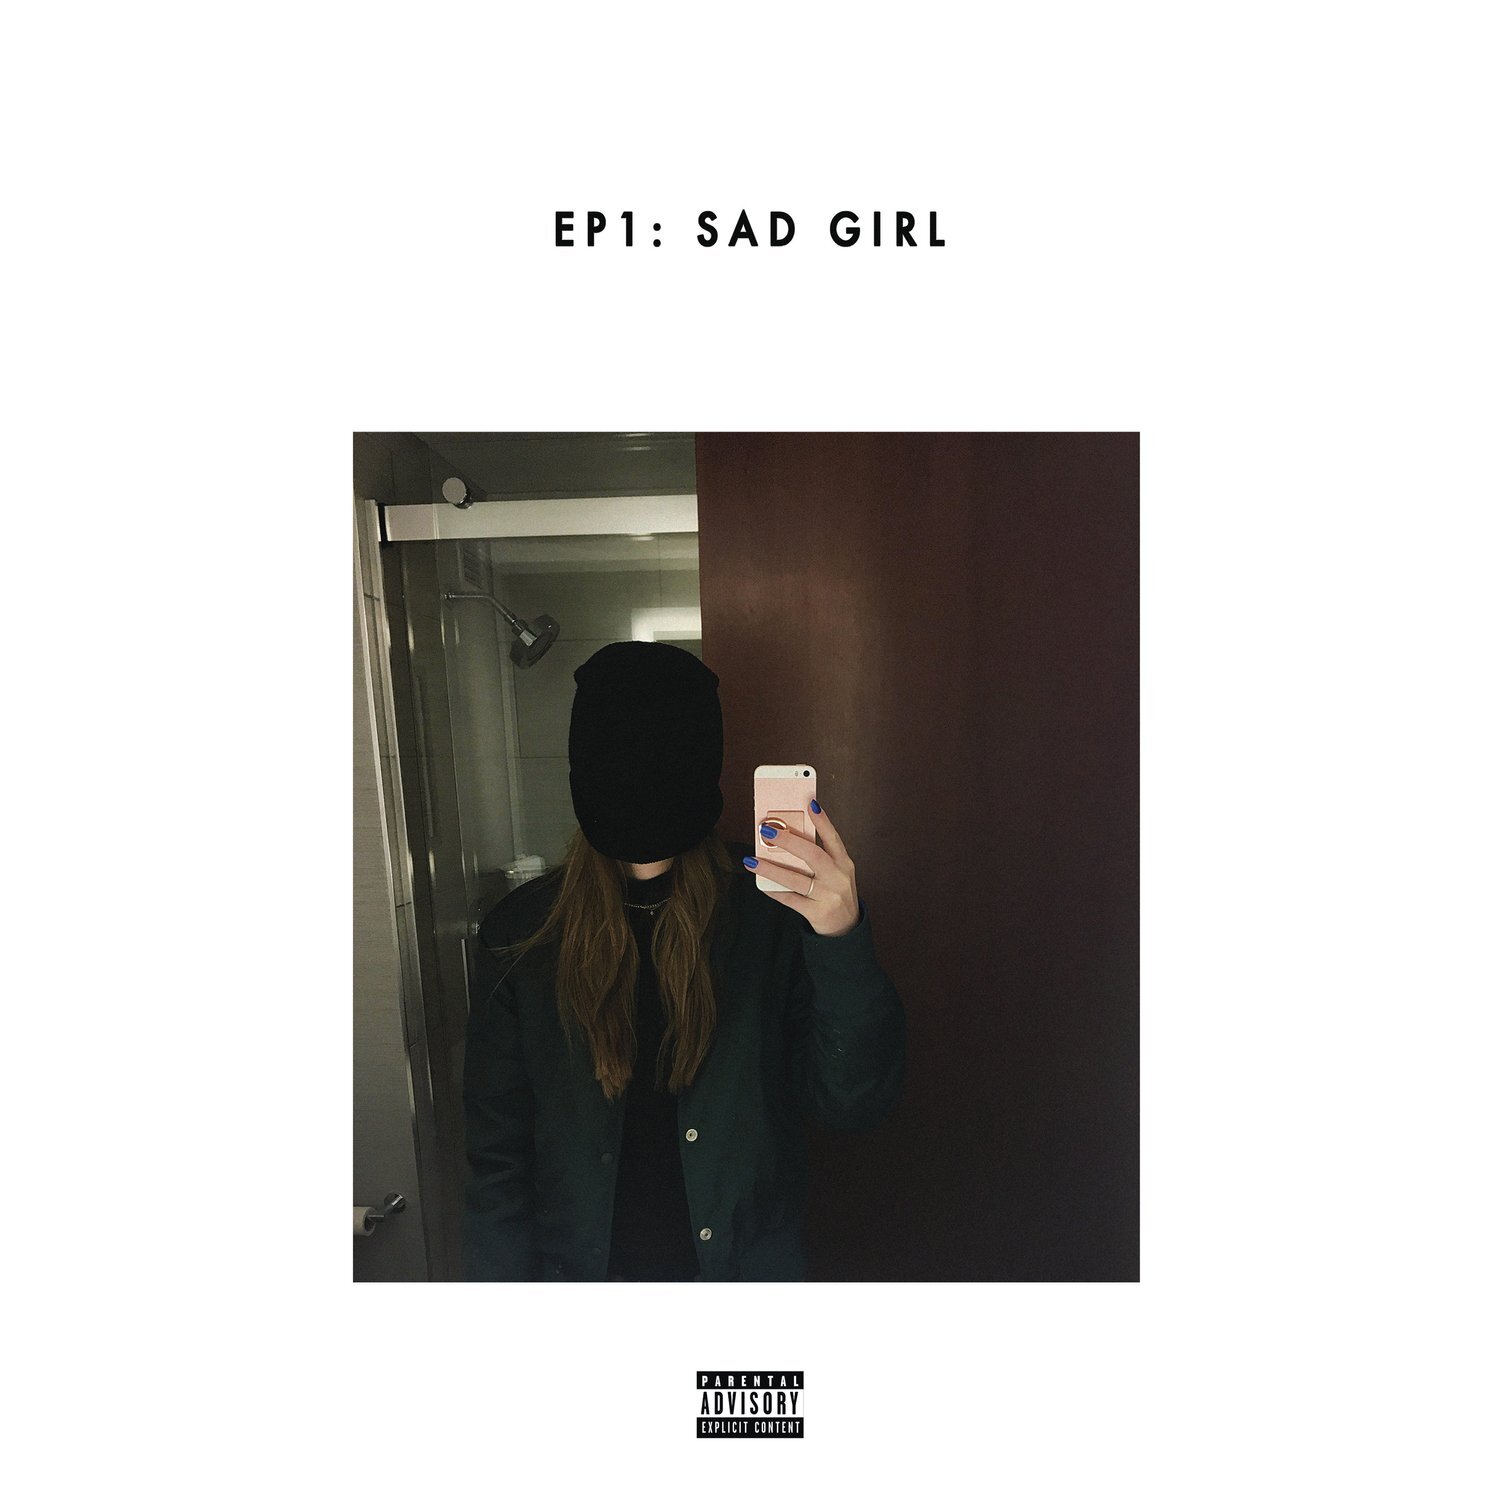 Sad Girl - Sasha Sloan